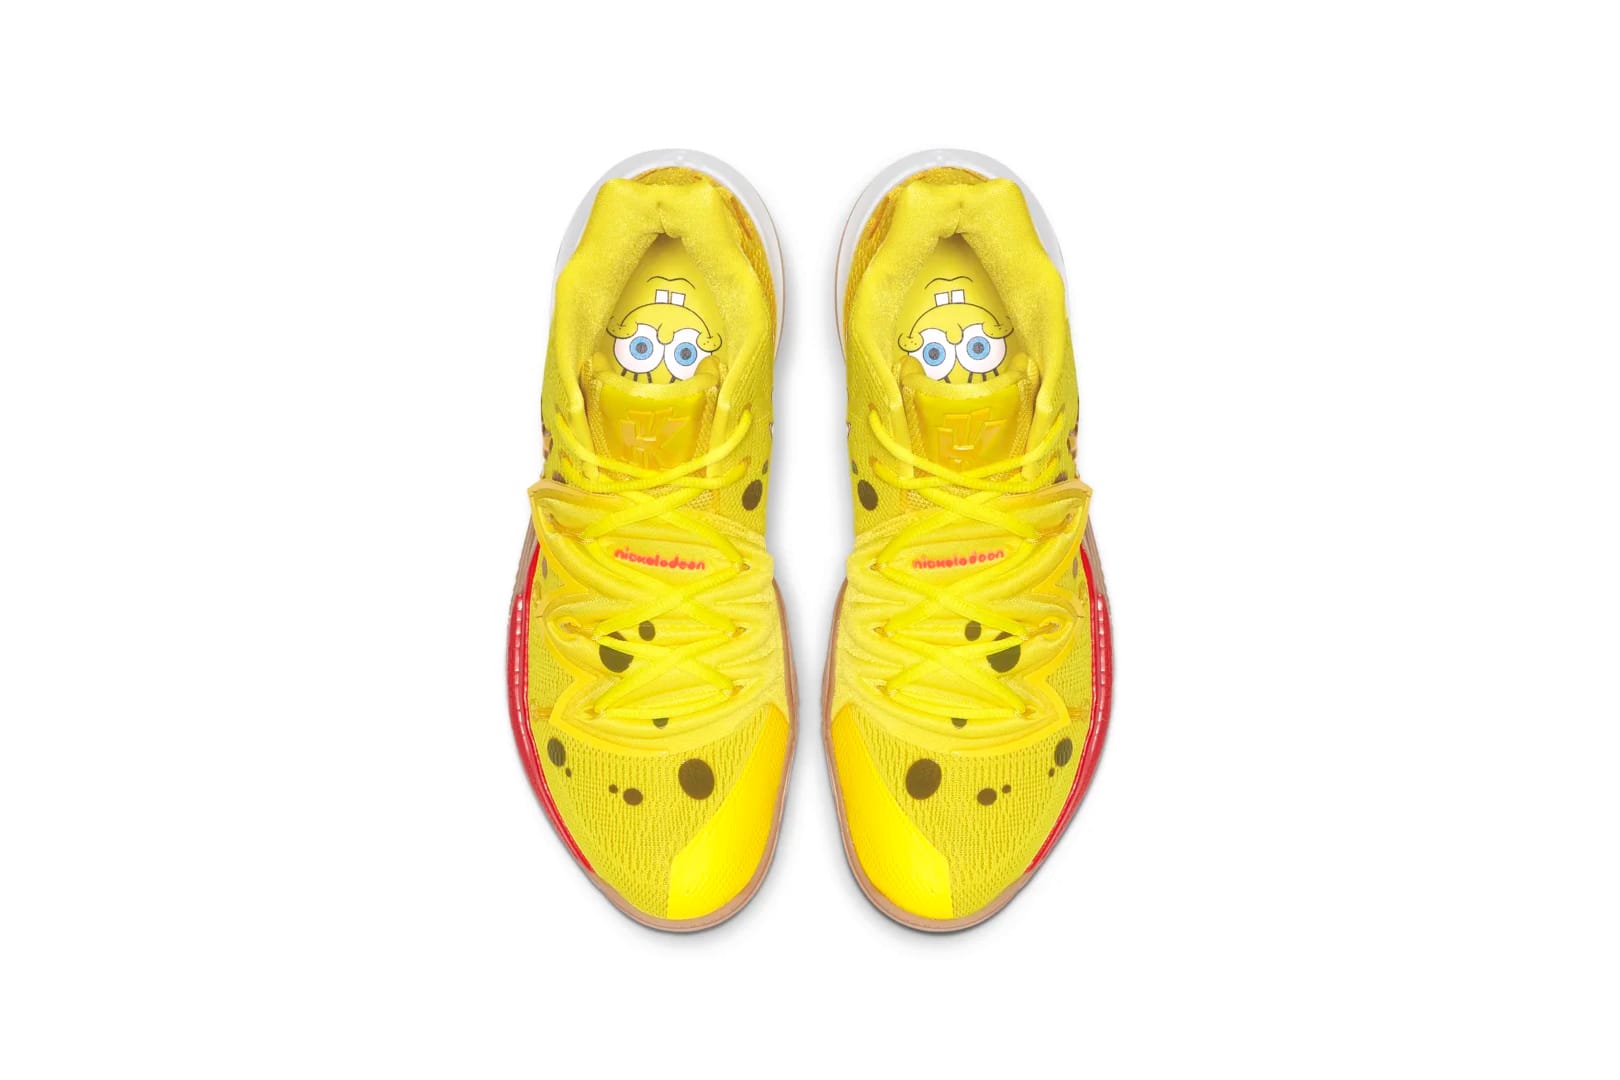 spongebob nikes shoes